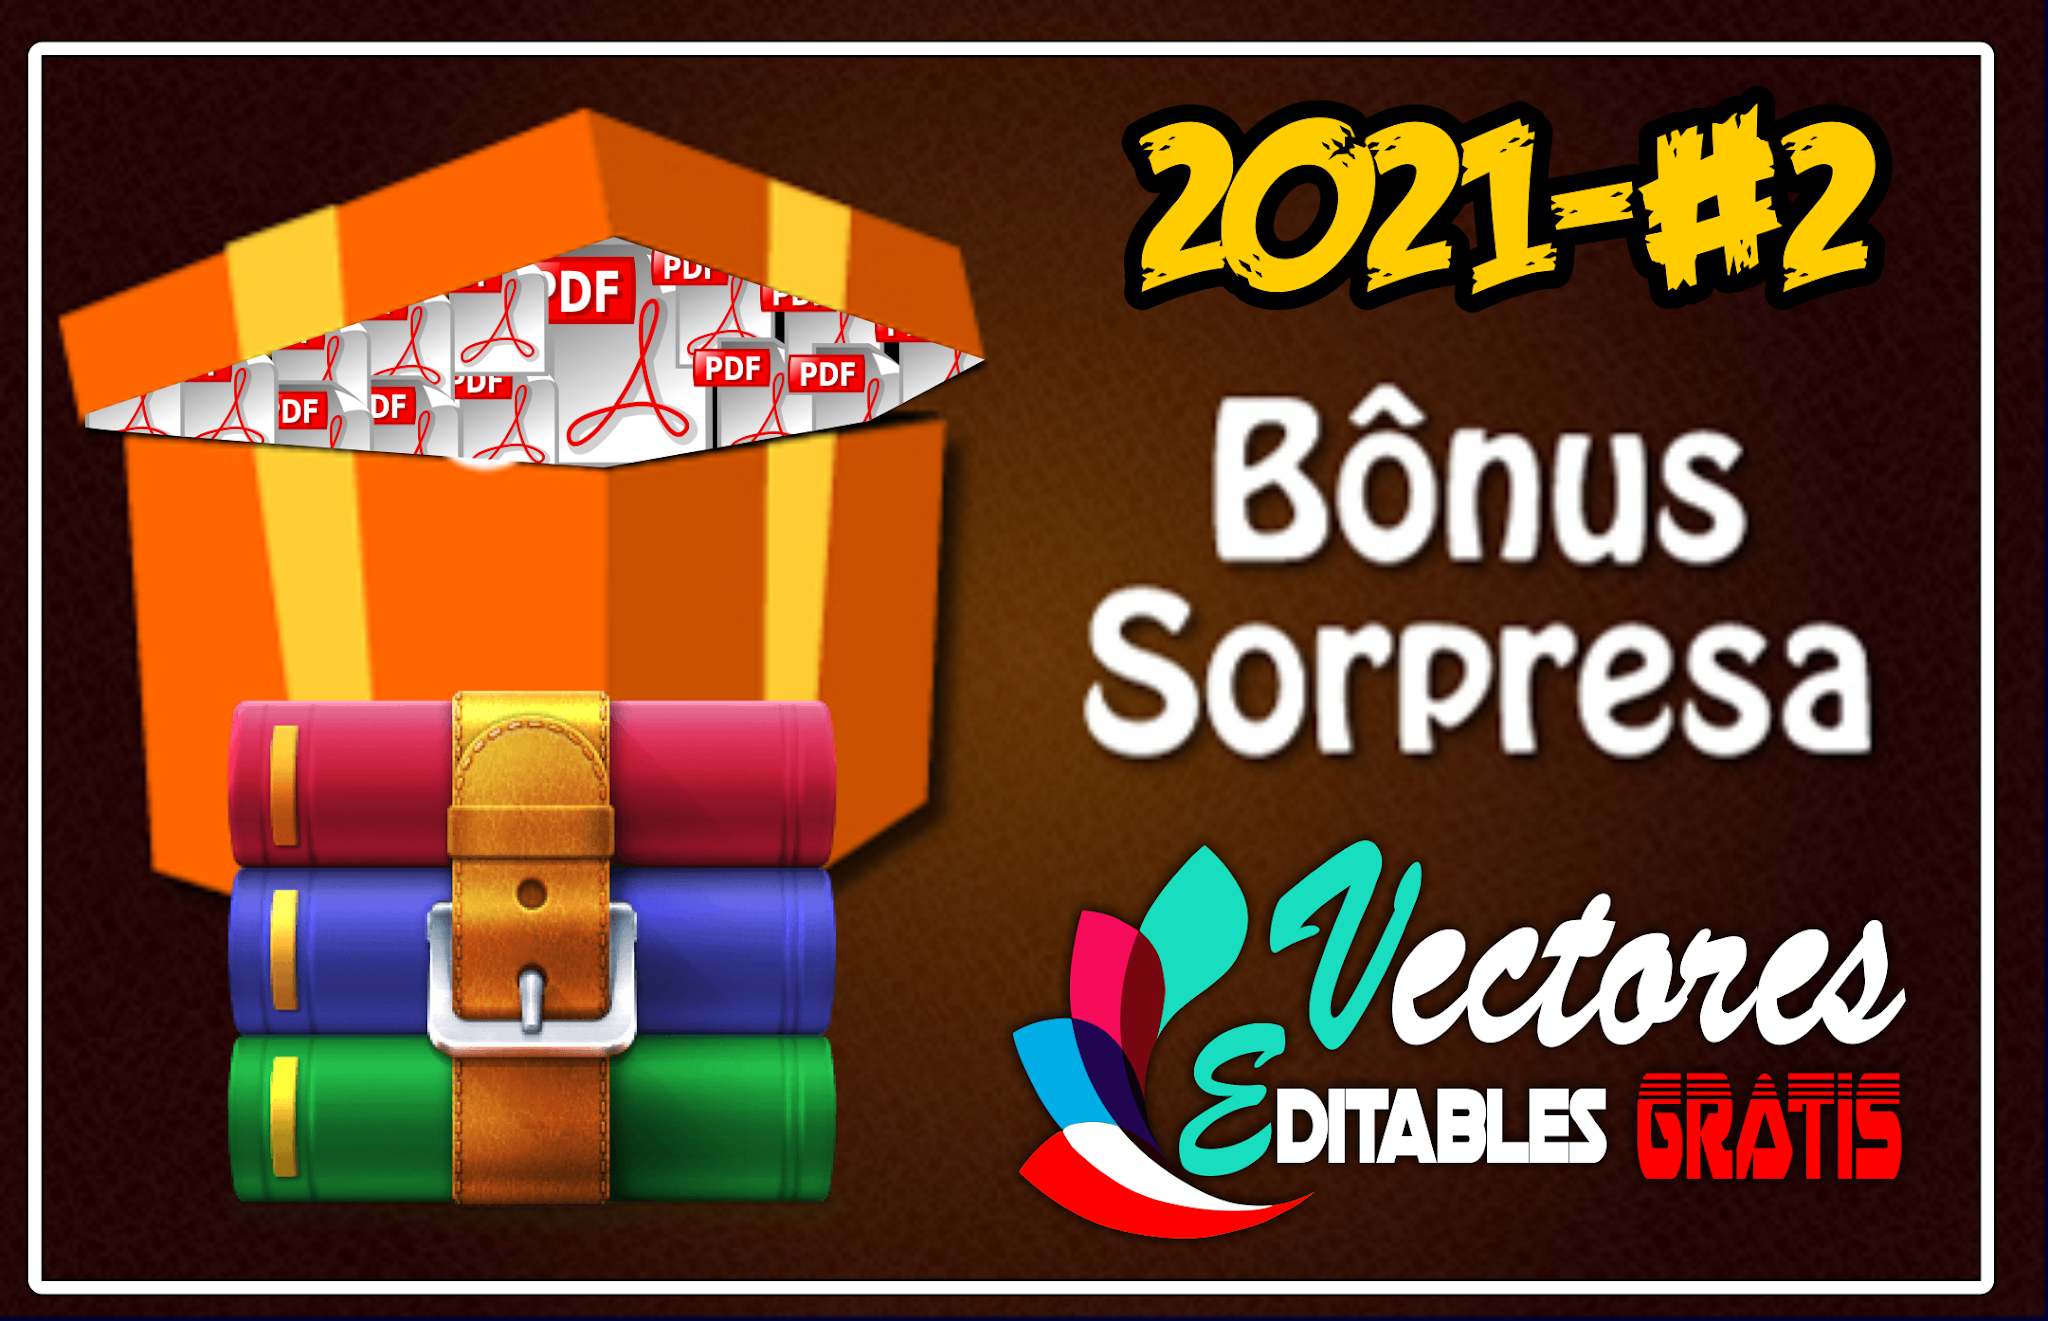 BONUS SORPRESA DE VECTORES EDITABLES 2021-#2